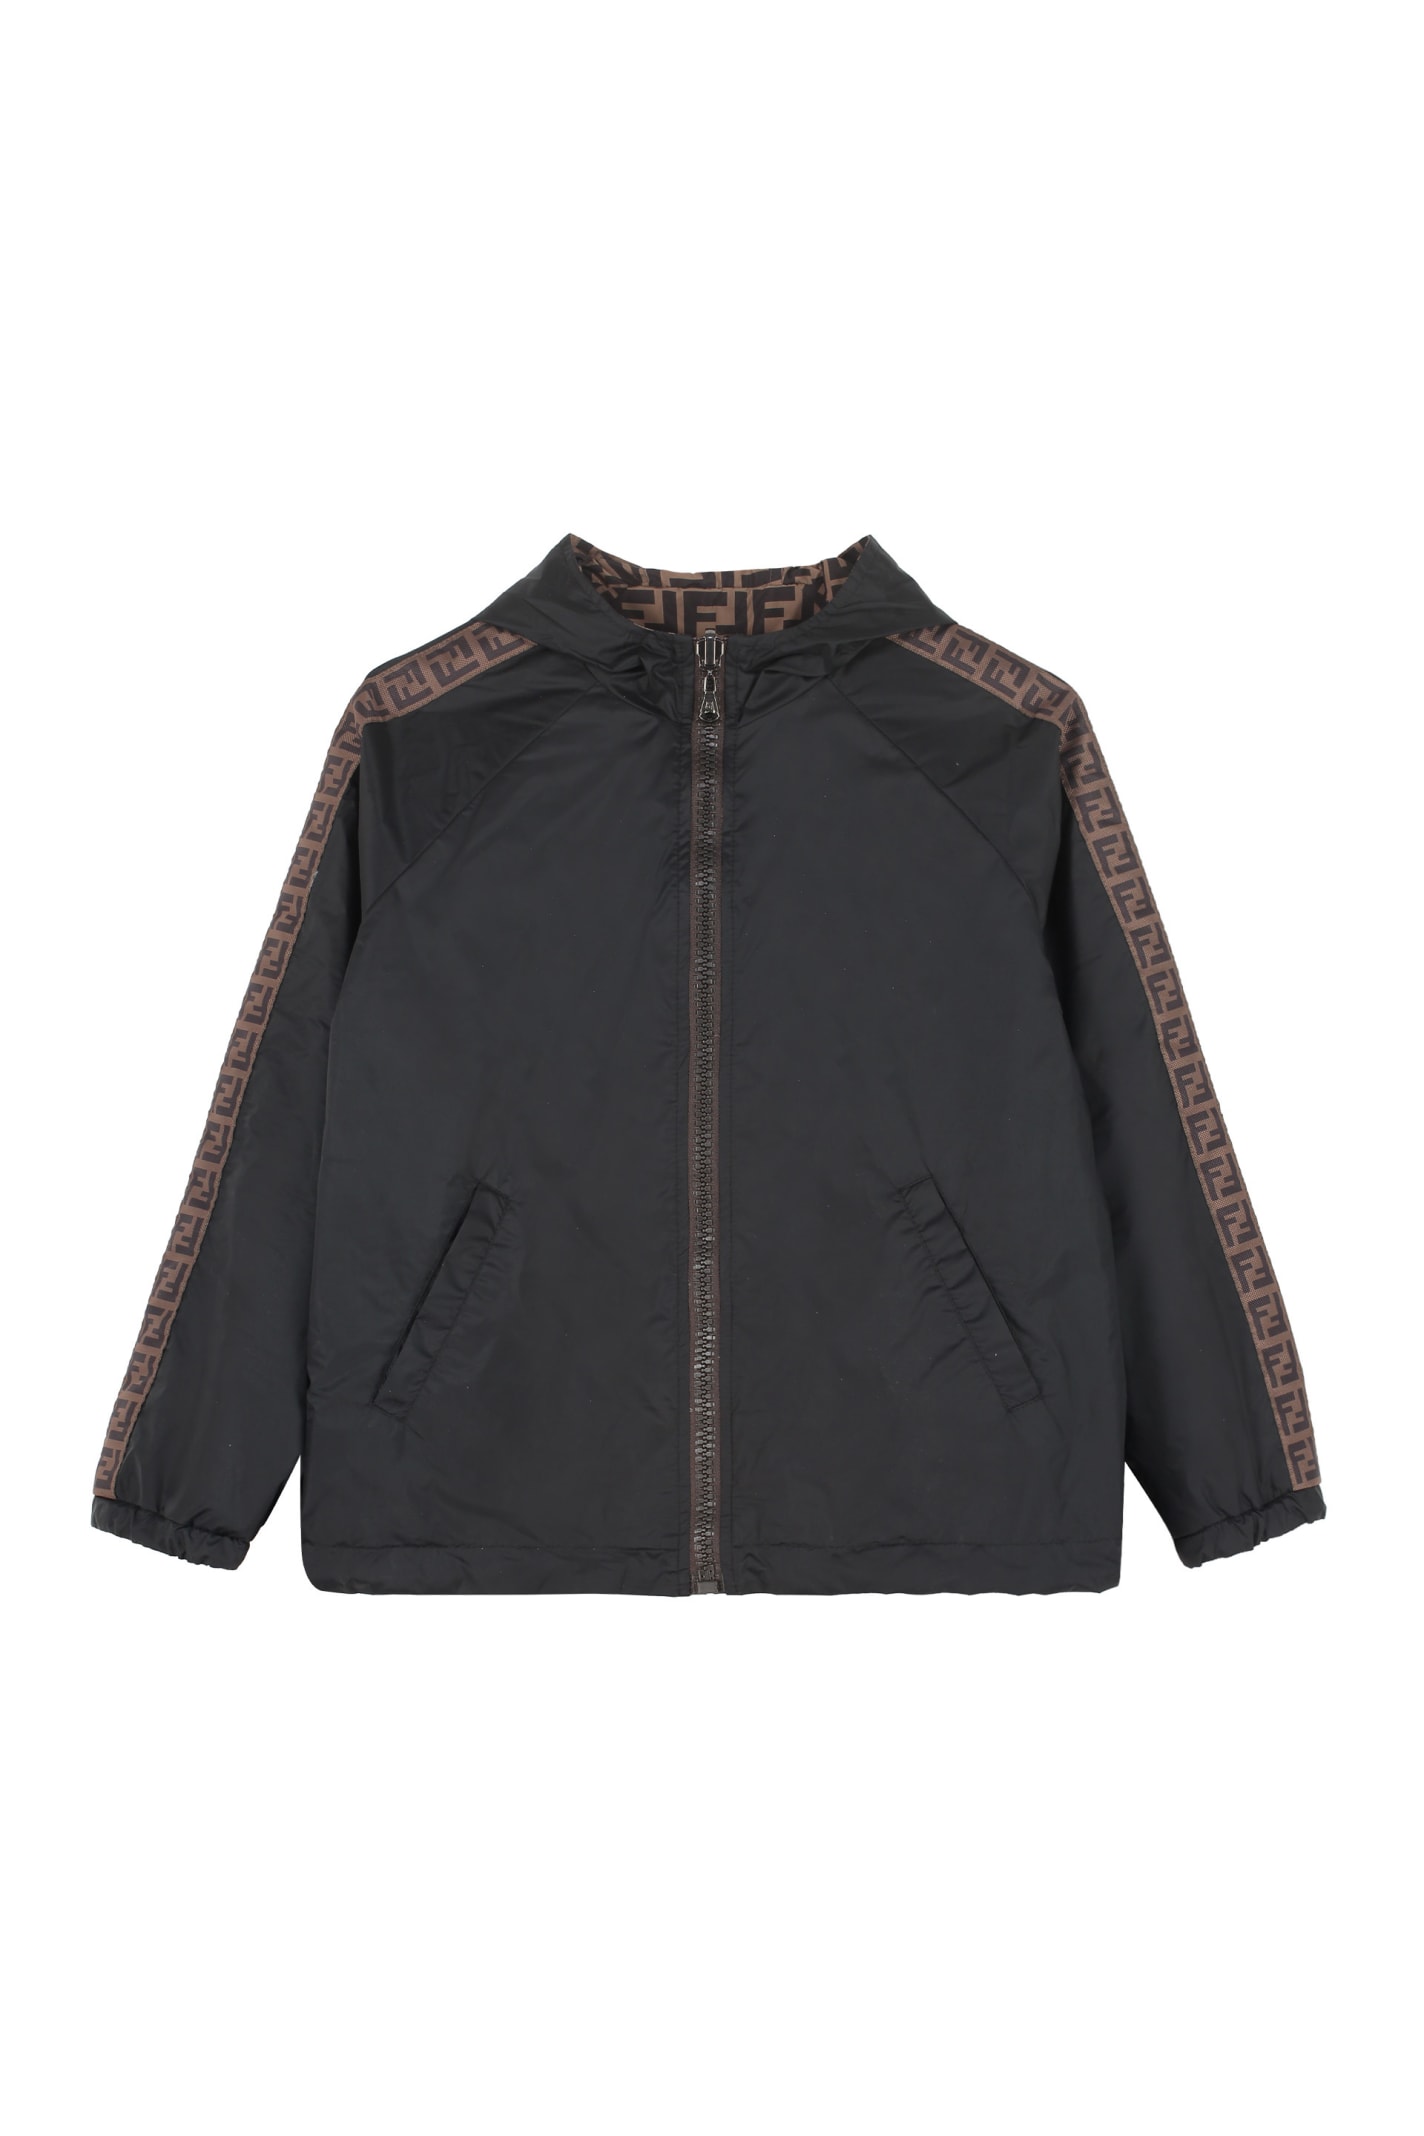 Fendi Kids' Reversible Windbreaker-jacket In Black